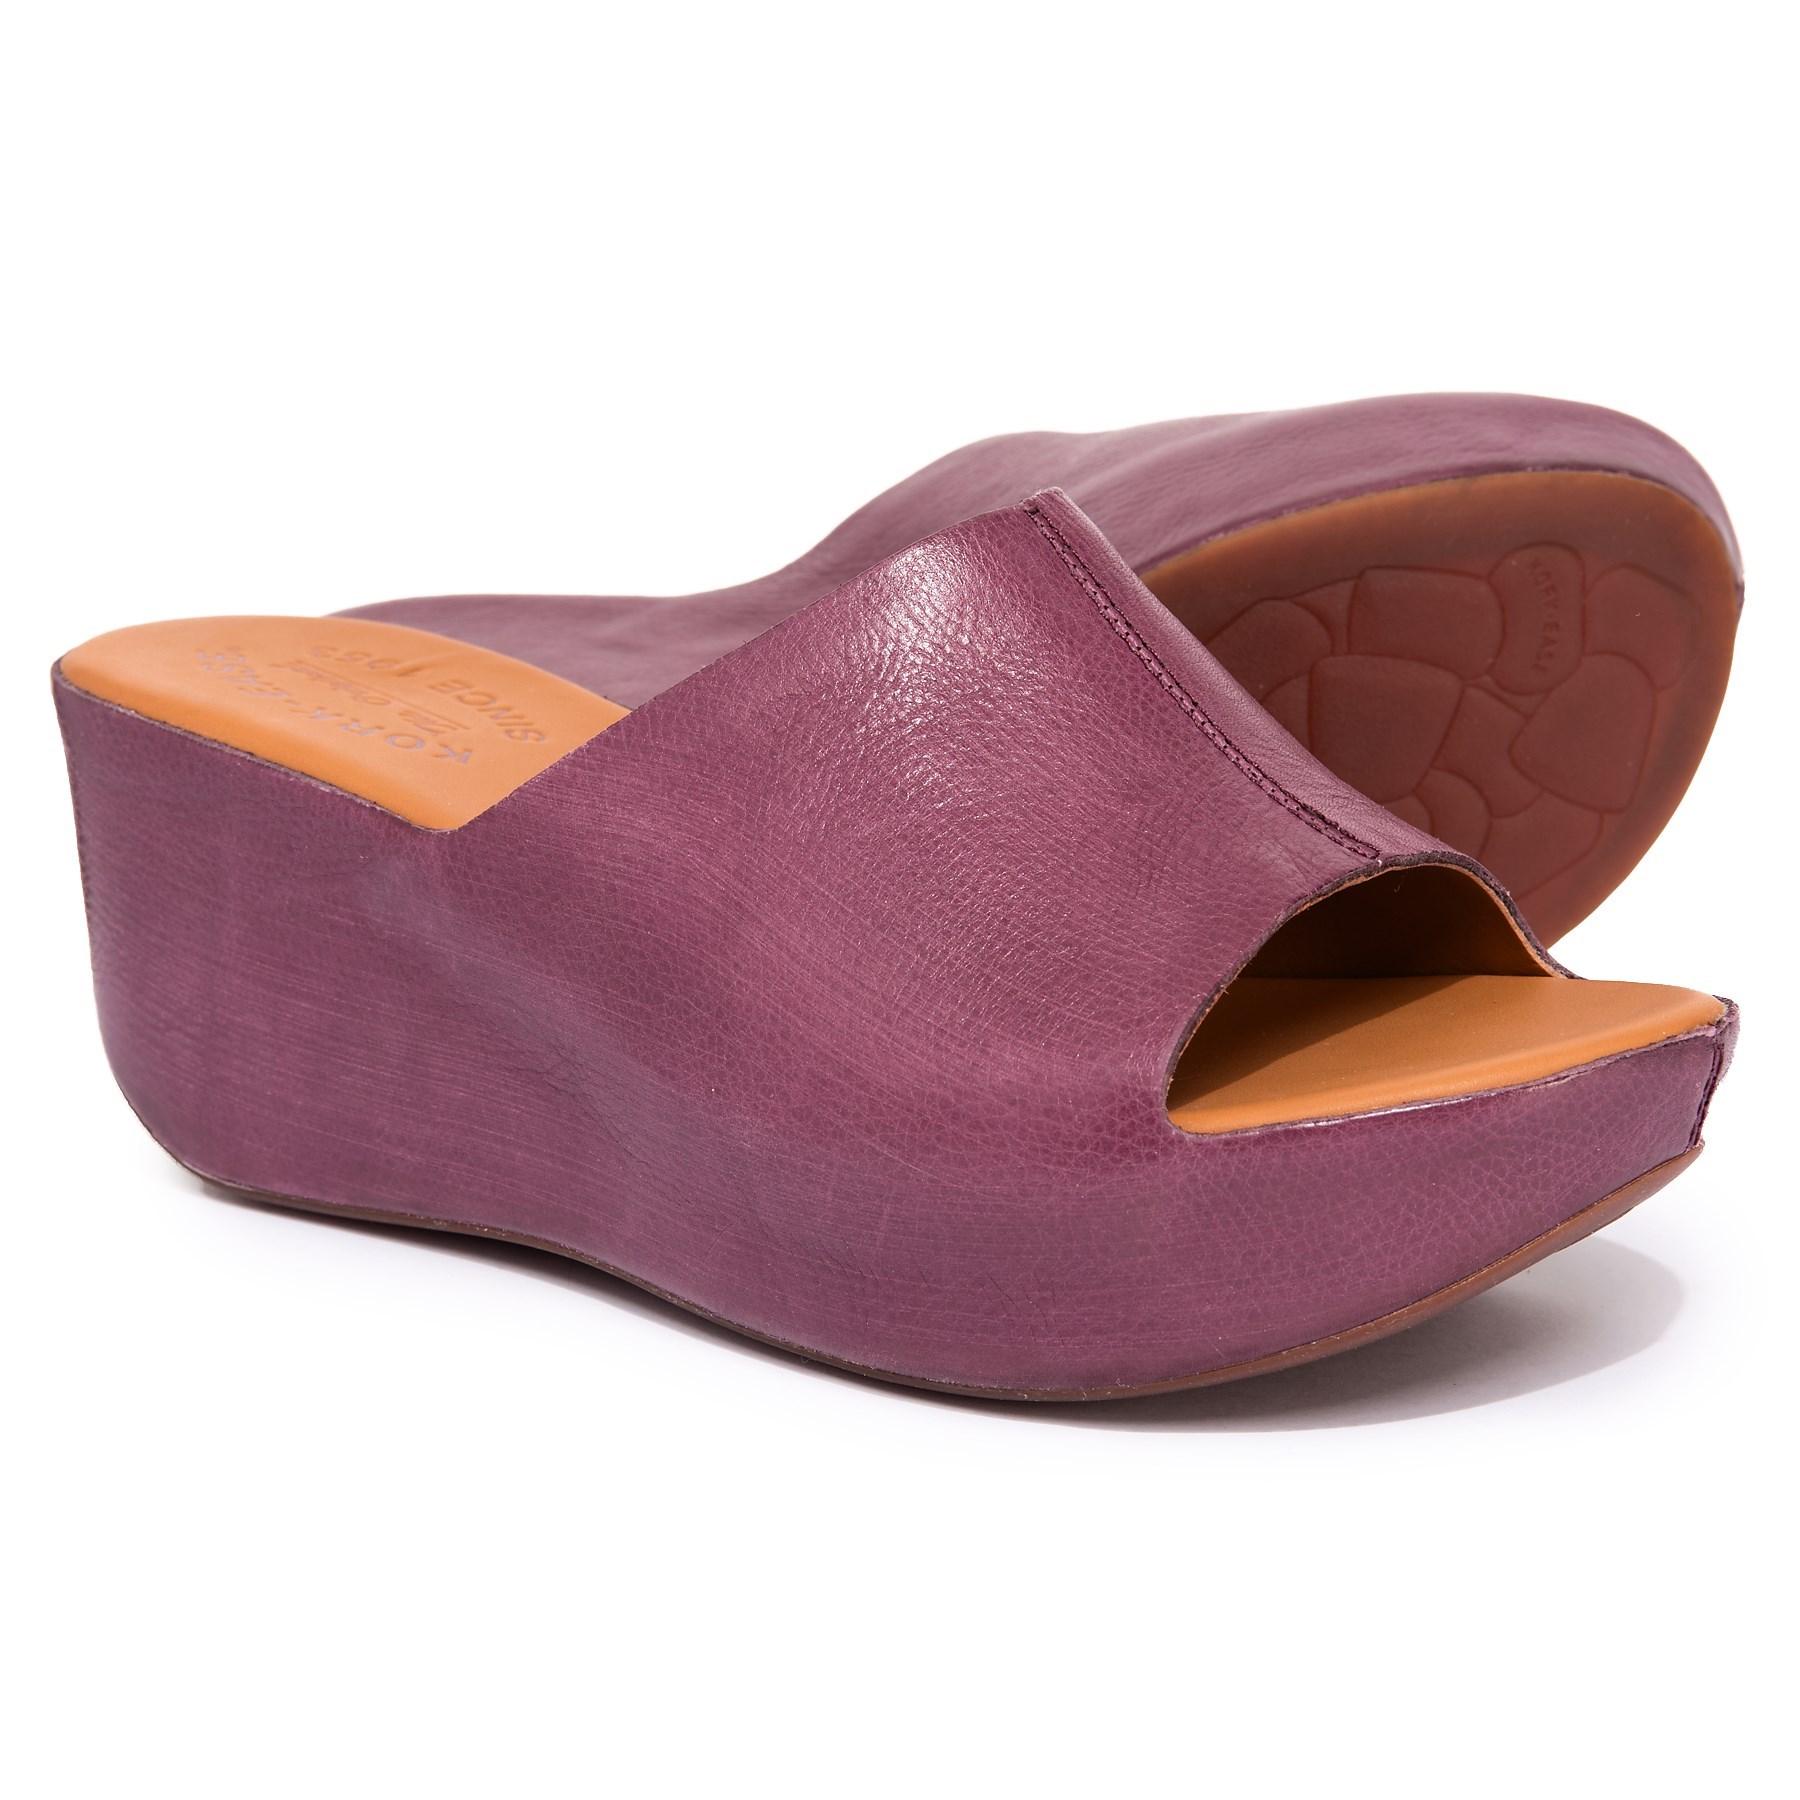 Kork-Ease Leather Greer (burgundy) Wedge Shoes in Purple - Lyst